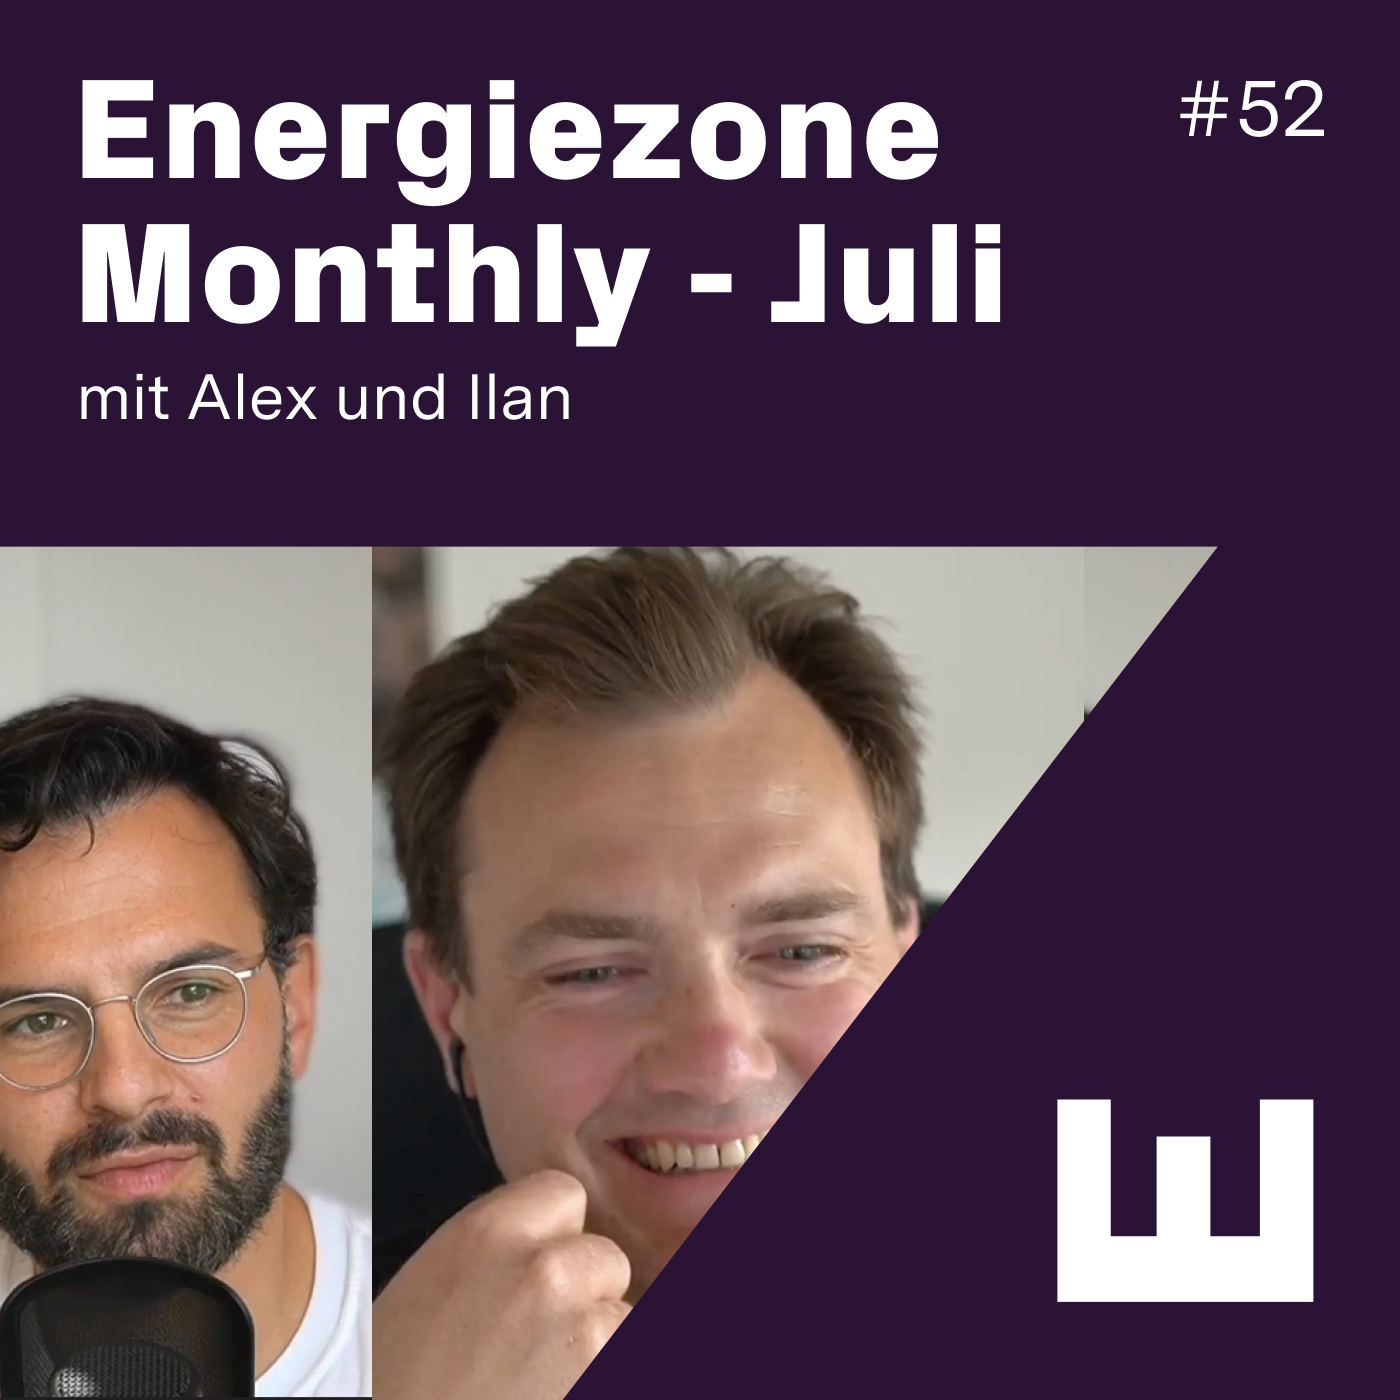 E#52 Energiezone Monthly mit Alex und Ilan